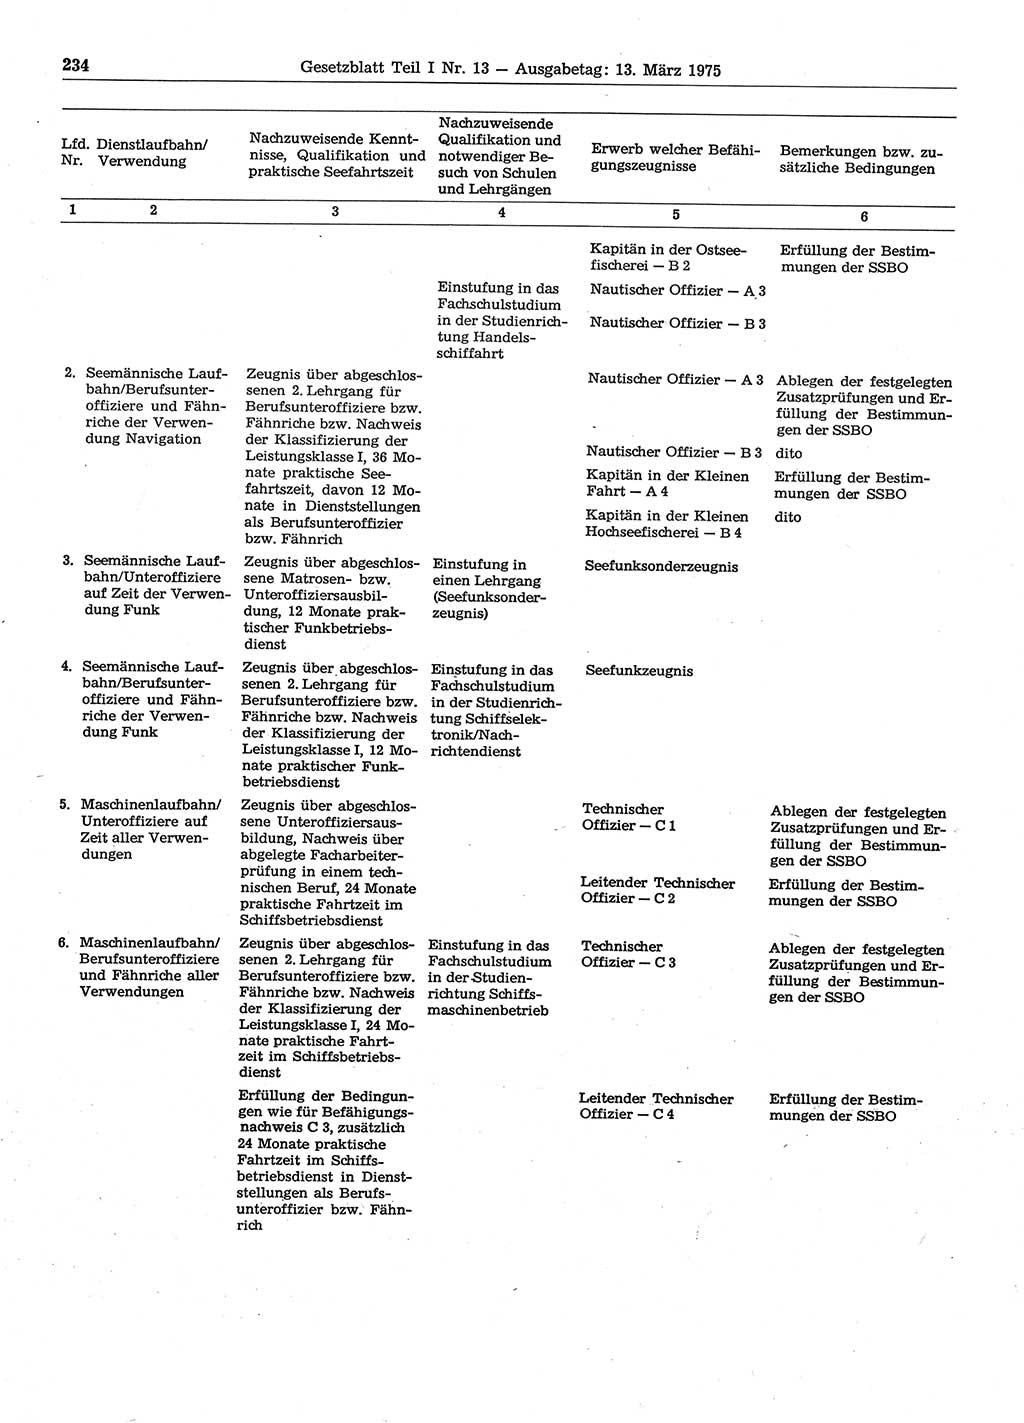 Gesetzblatt (GBl.) der Deutschen Demokratischen Republik (DDR) Teil Ⅰ 1975, Seite 234 (GBl. DDR Ⅰ 1975, S. 234)